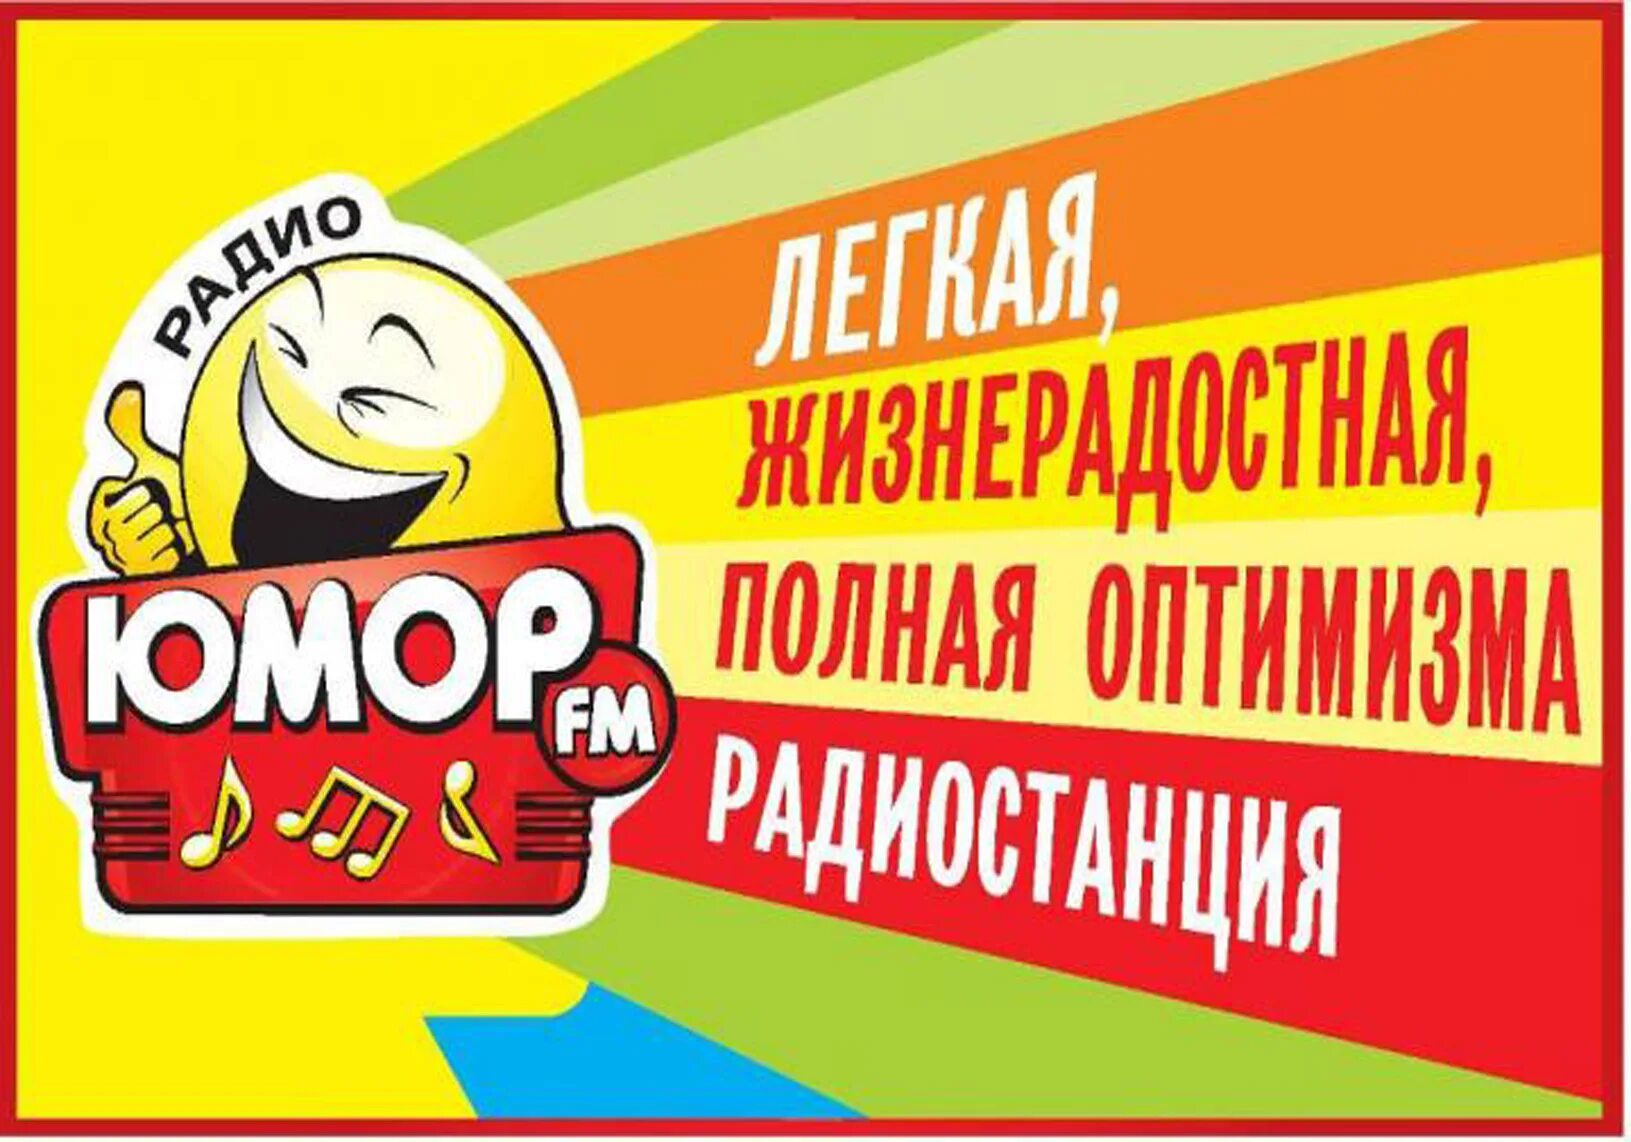 Веселое радио. Юмор fm. Юмор fm логотип. Радио юмор. Радиостанция юмор ФМ.